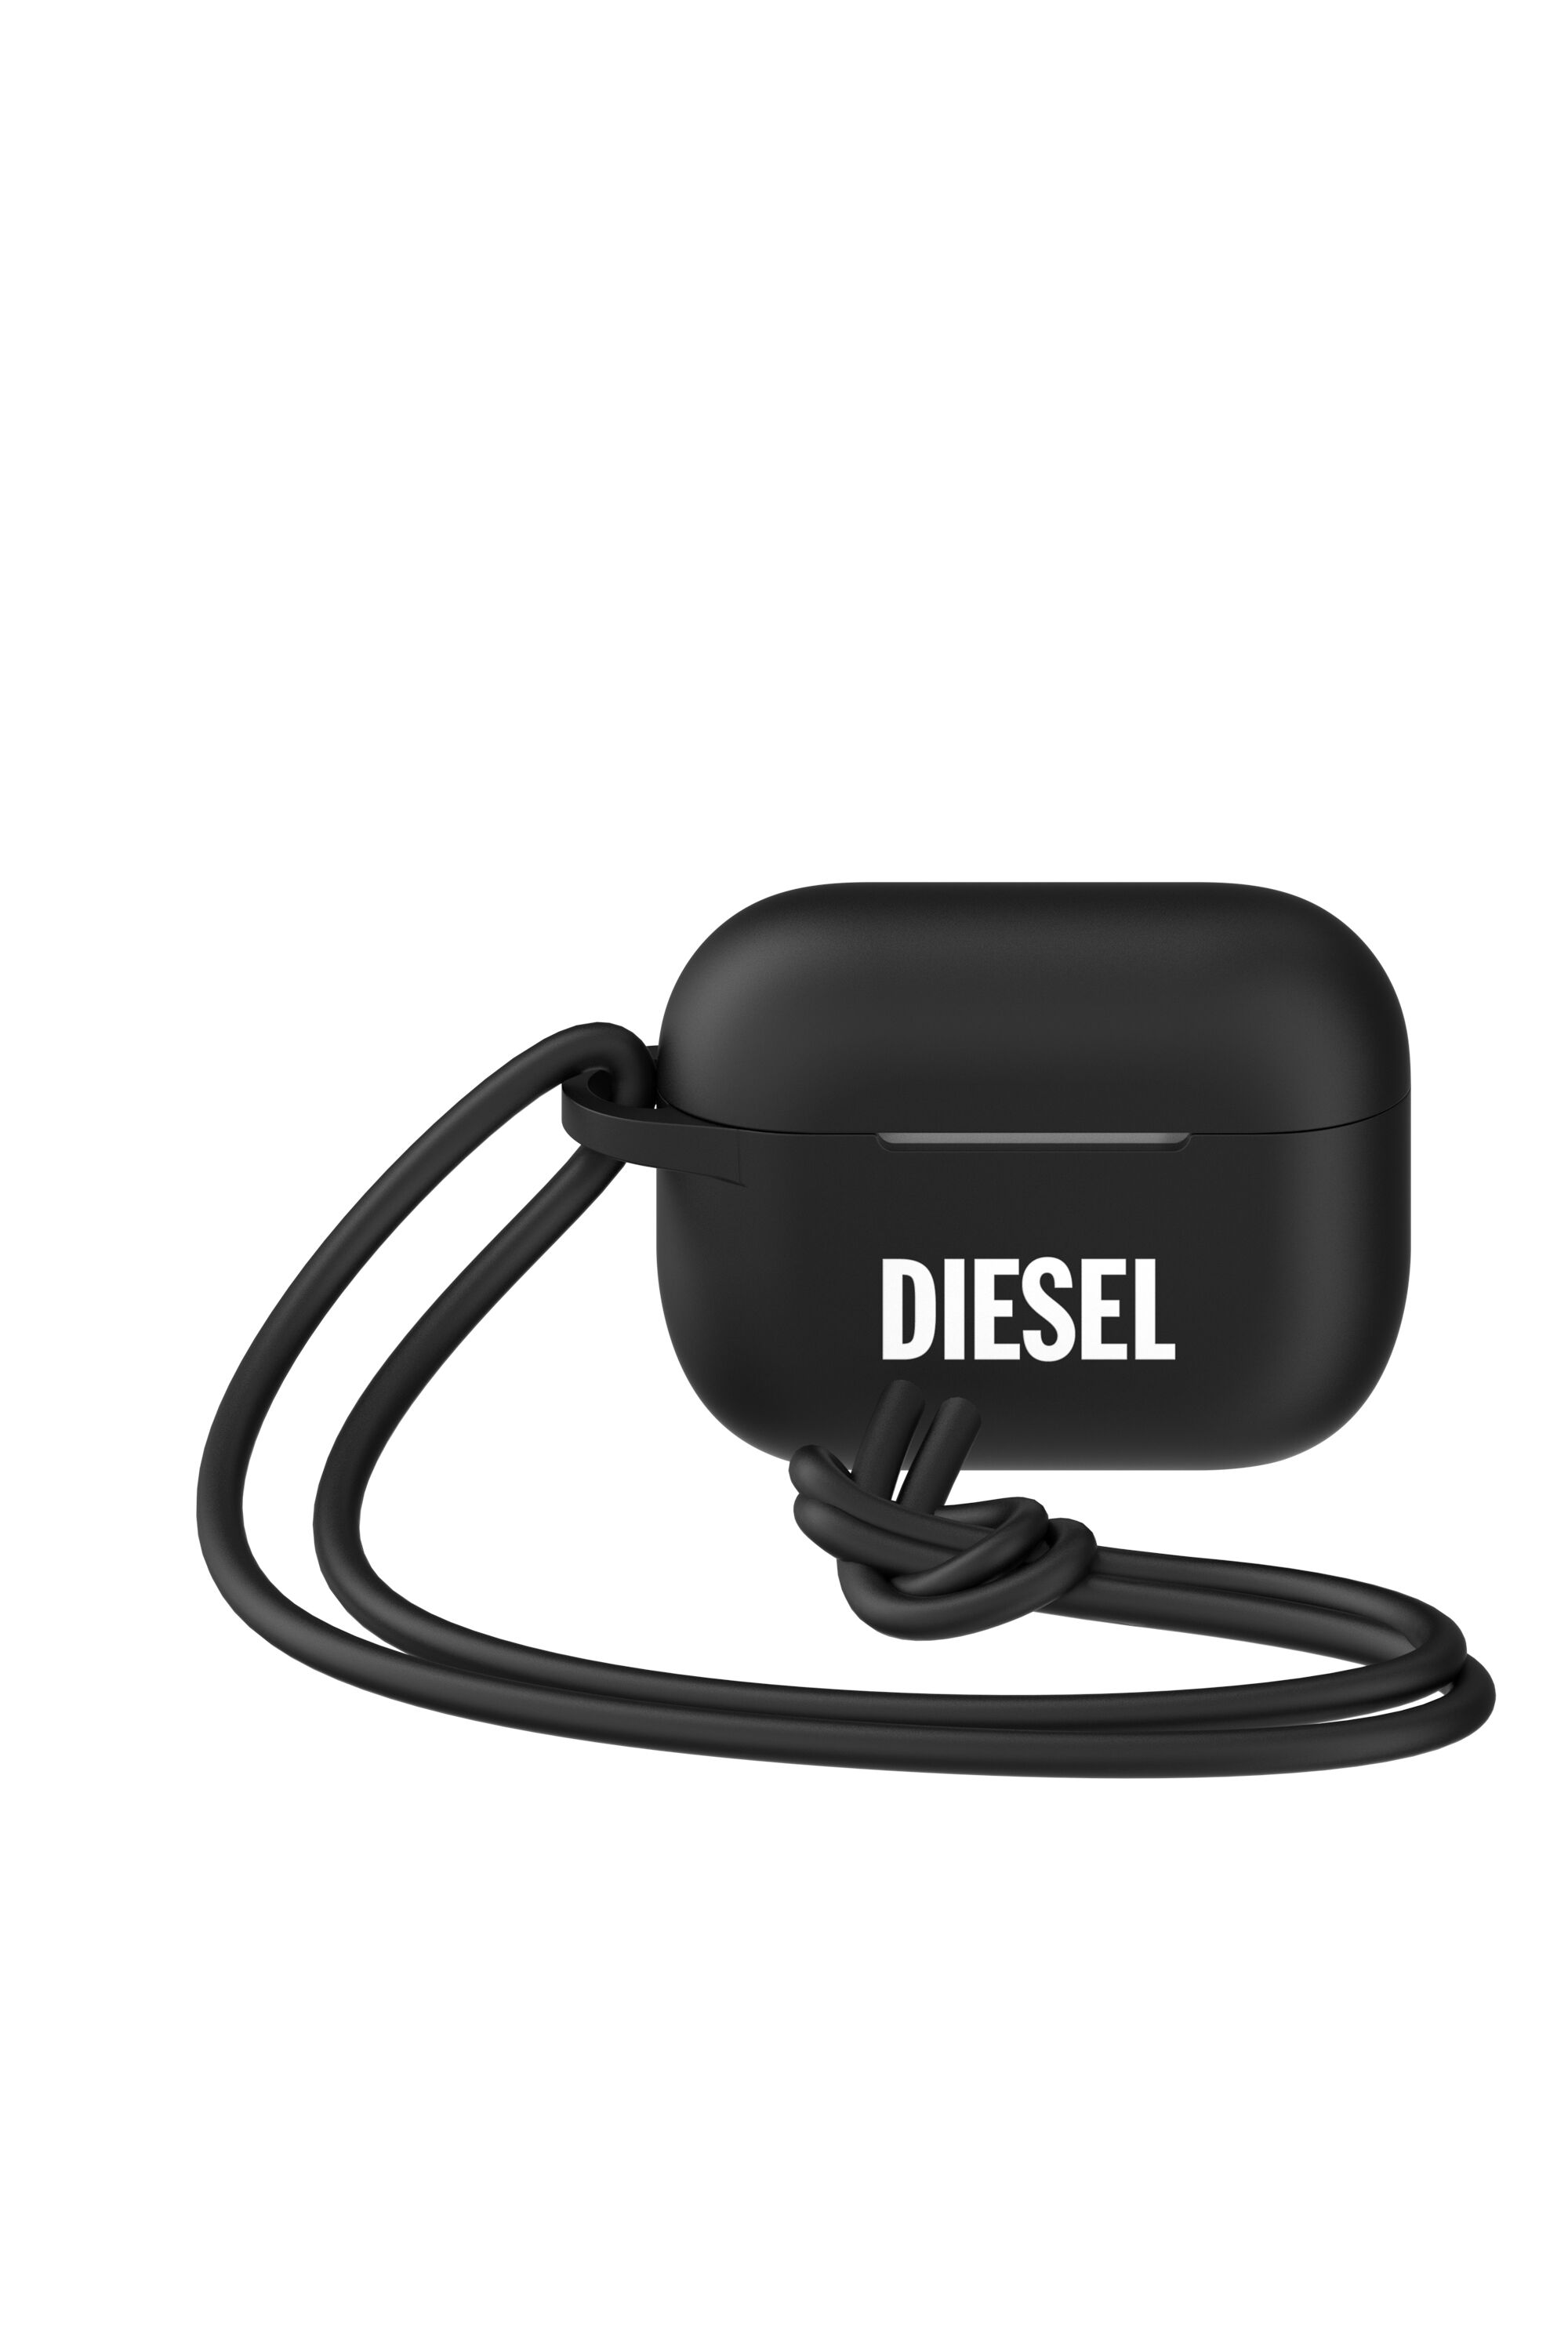 Diesel - 49863 AIRPOD CASE,  - Image 5